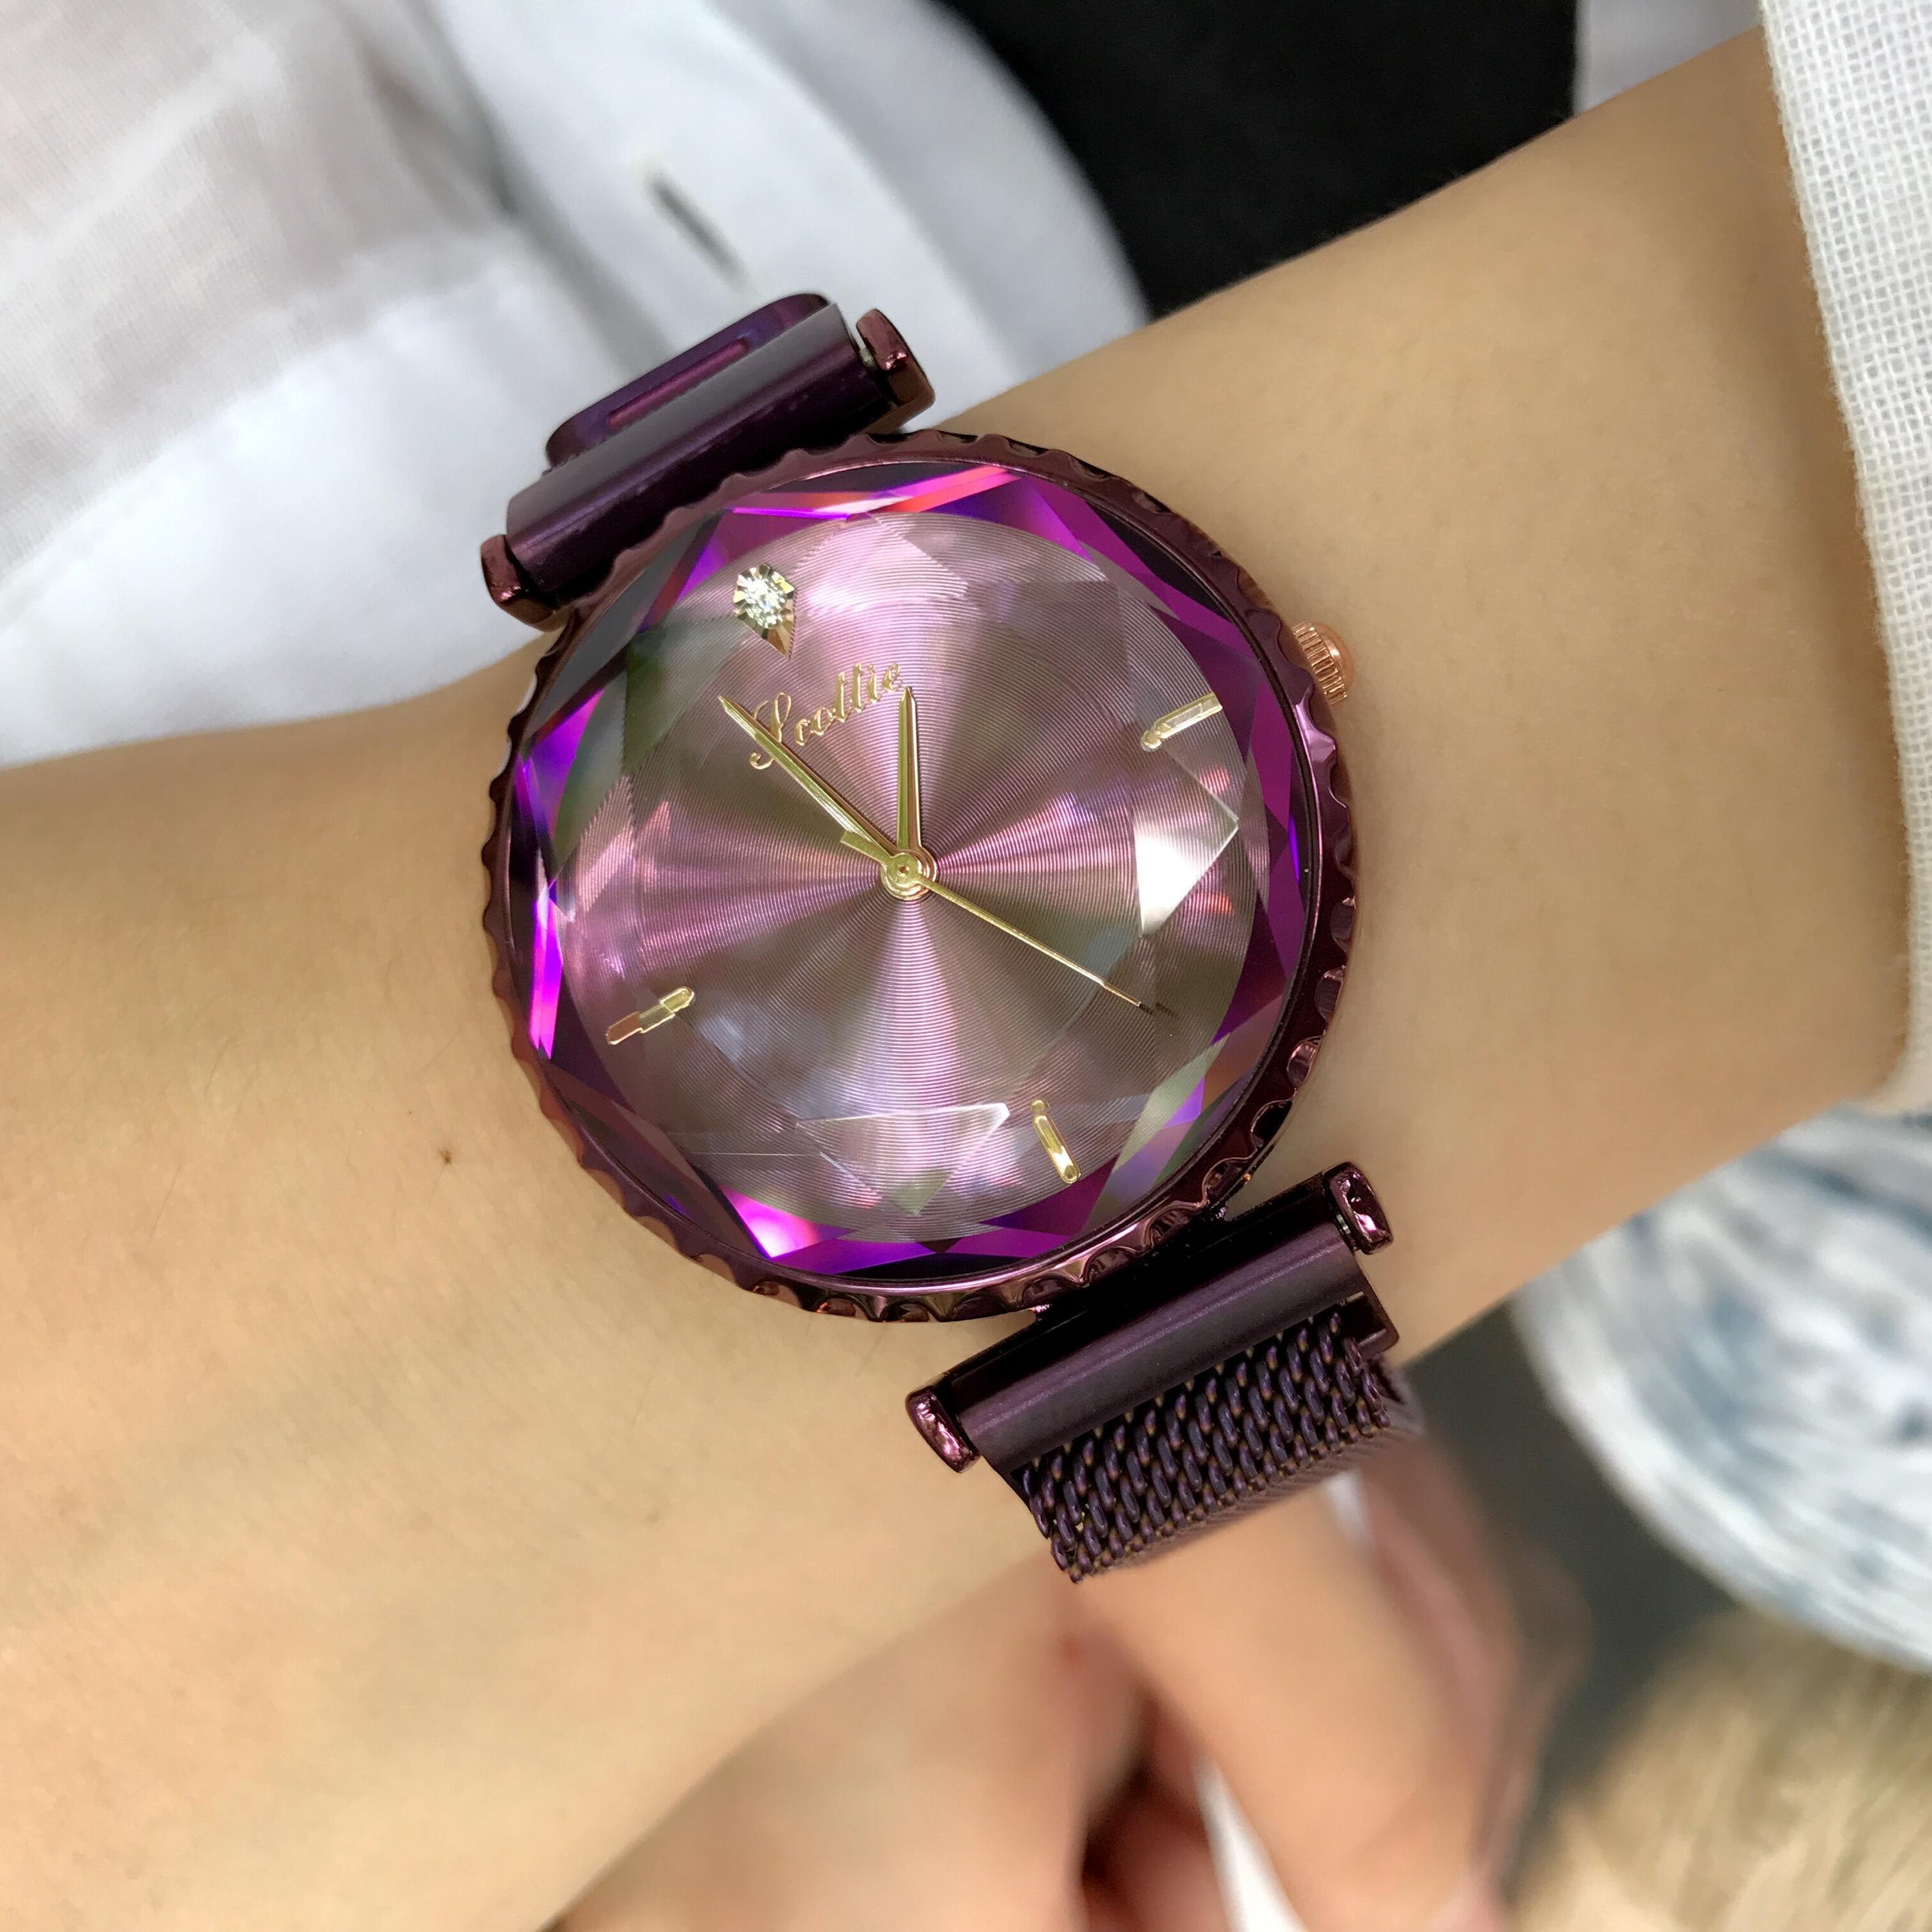 นาฬิกาข้อมือ scottie ของแท้（ประเทศญี่ปุ่น การเคลื่อนไหว ）นาฬิกาแฟชั่น Women Fashion Casual Bussiness Watches นาฬิกาสายโลหะผสมนาฬิกาข้อมือควอตซ์หญิง กันน้ำ